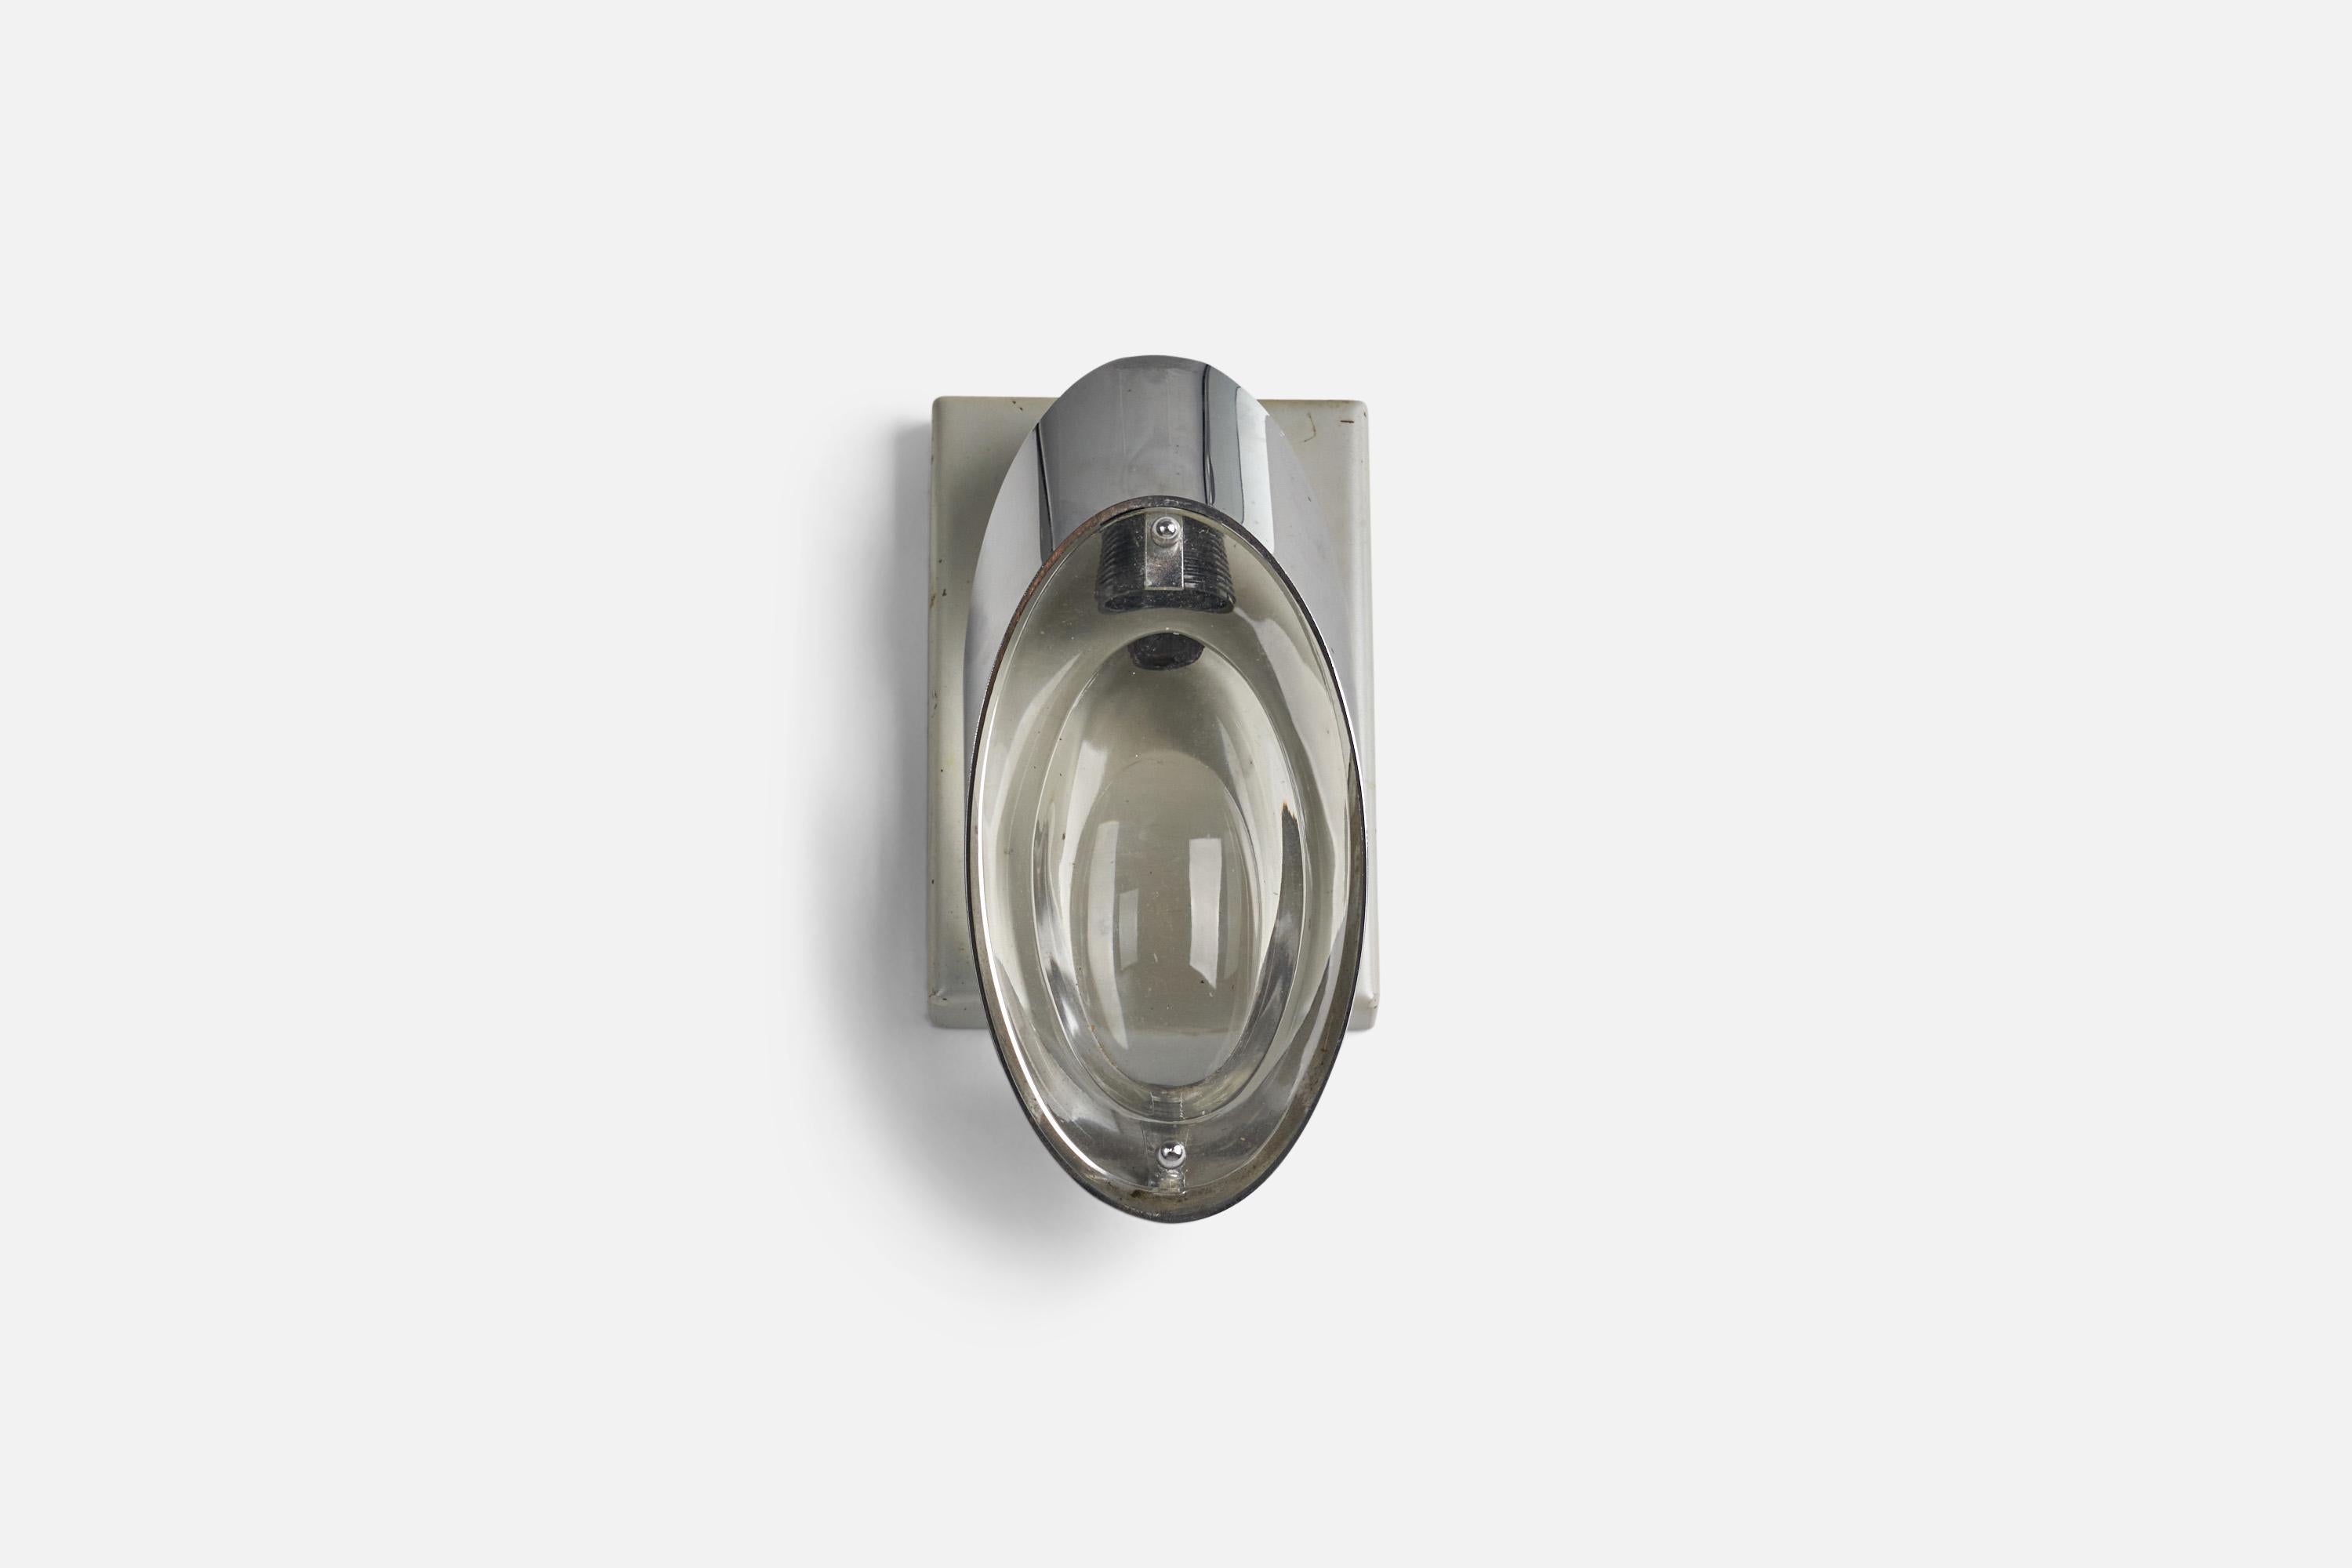 Eine Wandleuchte aus Metall und Glas, entworfen von Oscar Torlasco für Stilkronen, Italien, 1960er Jahre.

Fassung für E-12 Glühbirnen.

Abmessungen der Rückwand (Zoll) : 6 x 4,06 x 0,68 (Höhe x Breite x Tiefe)

Auf der Leuchte ist keine maximale